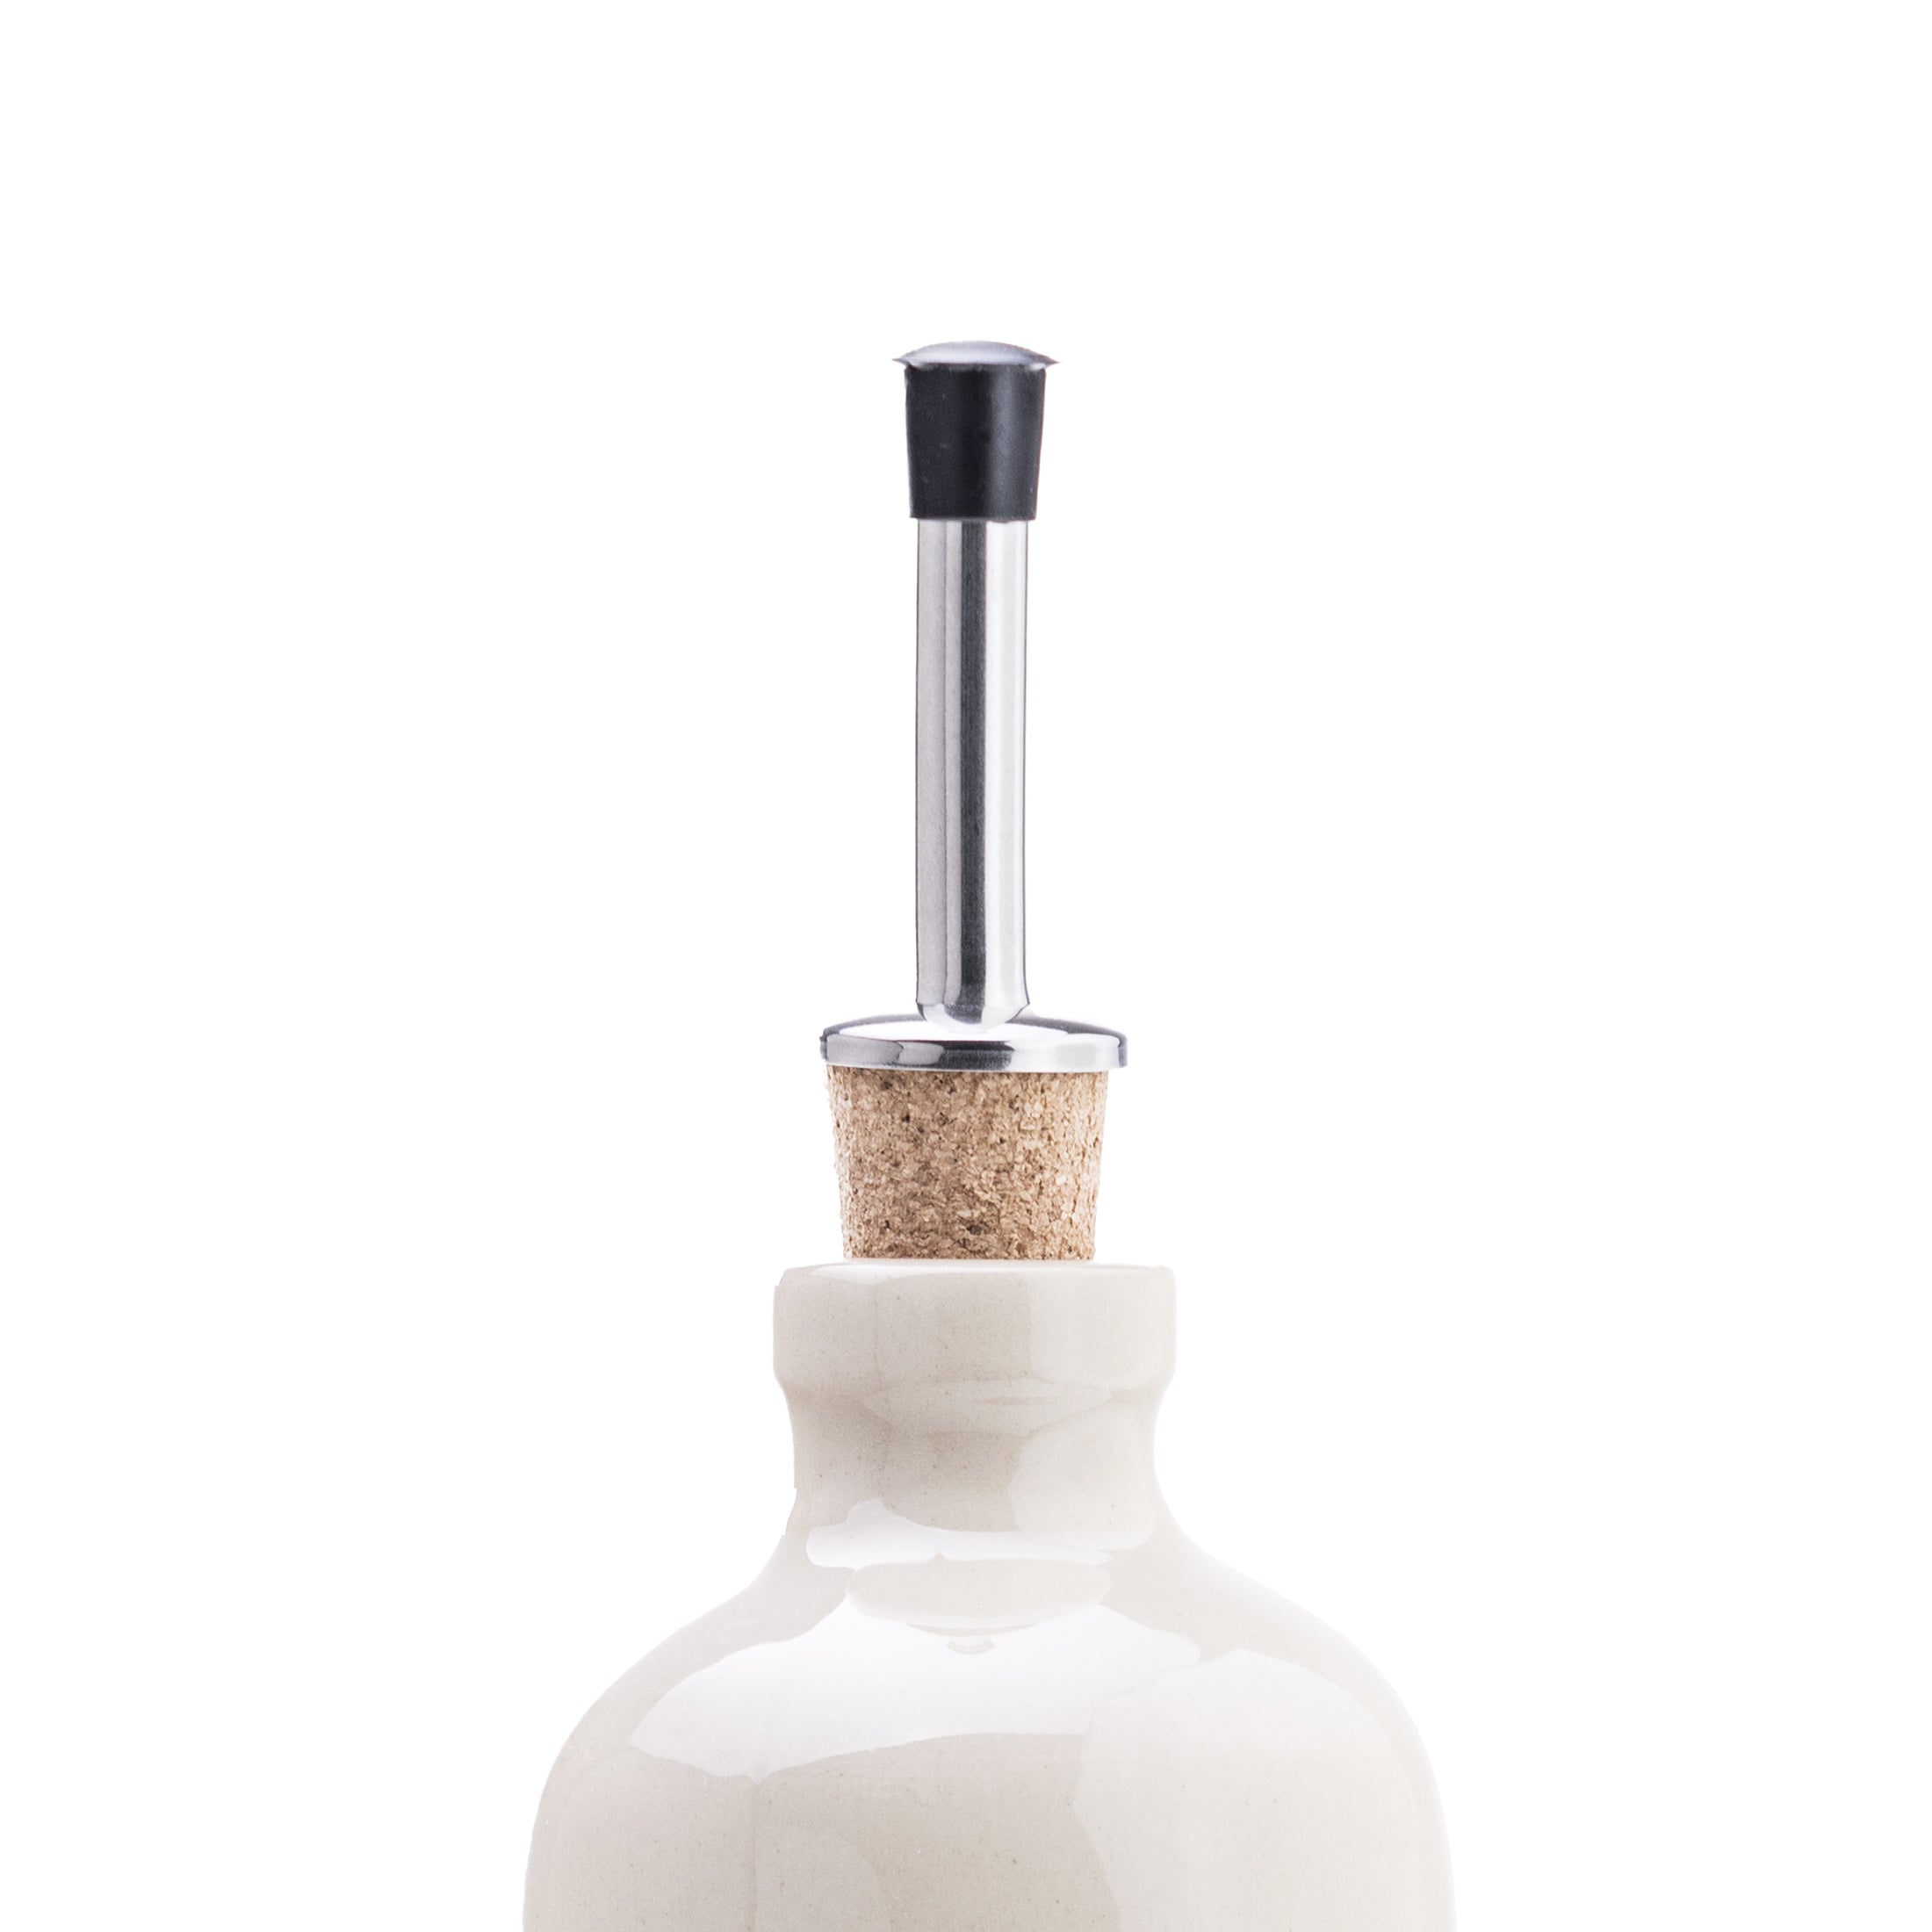 Herring & Bones - Concept Store Joyeux - La Manufacture de Digoin - Accessoires - Bec verseur pour cruchon à huile